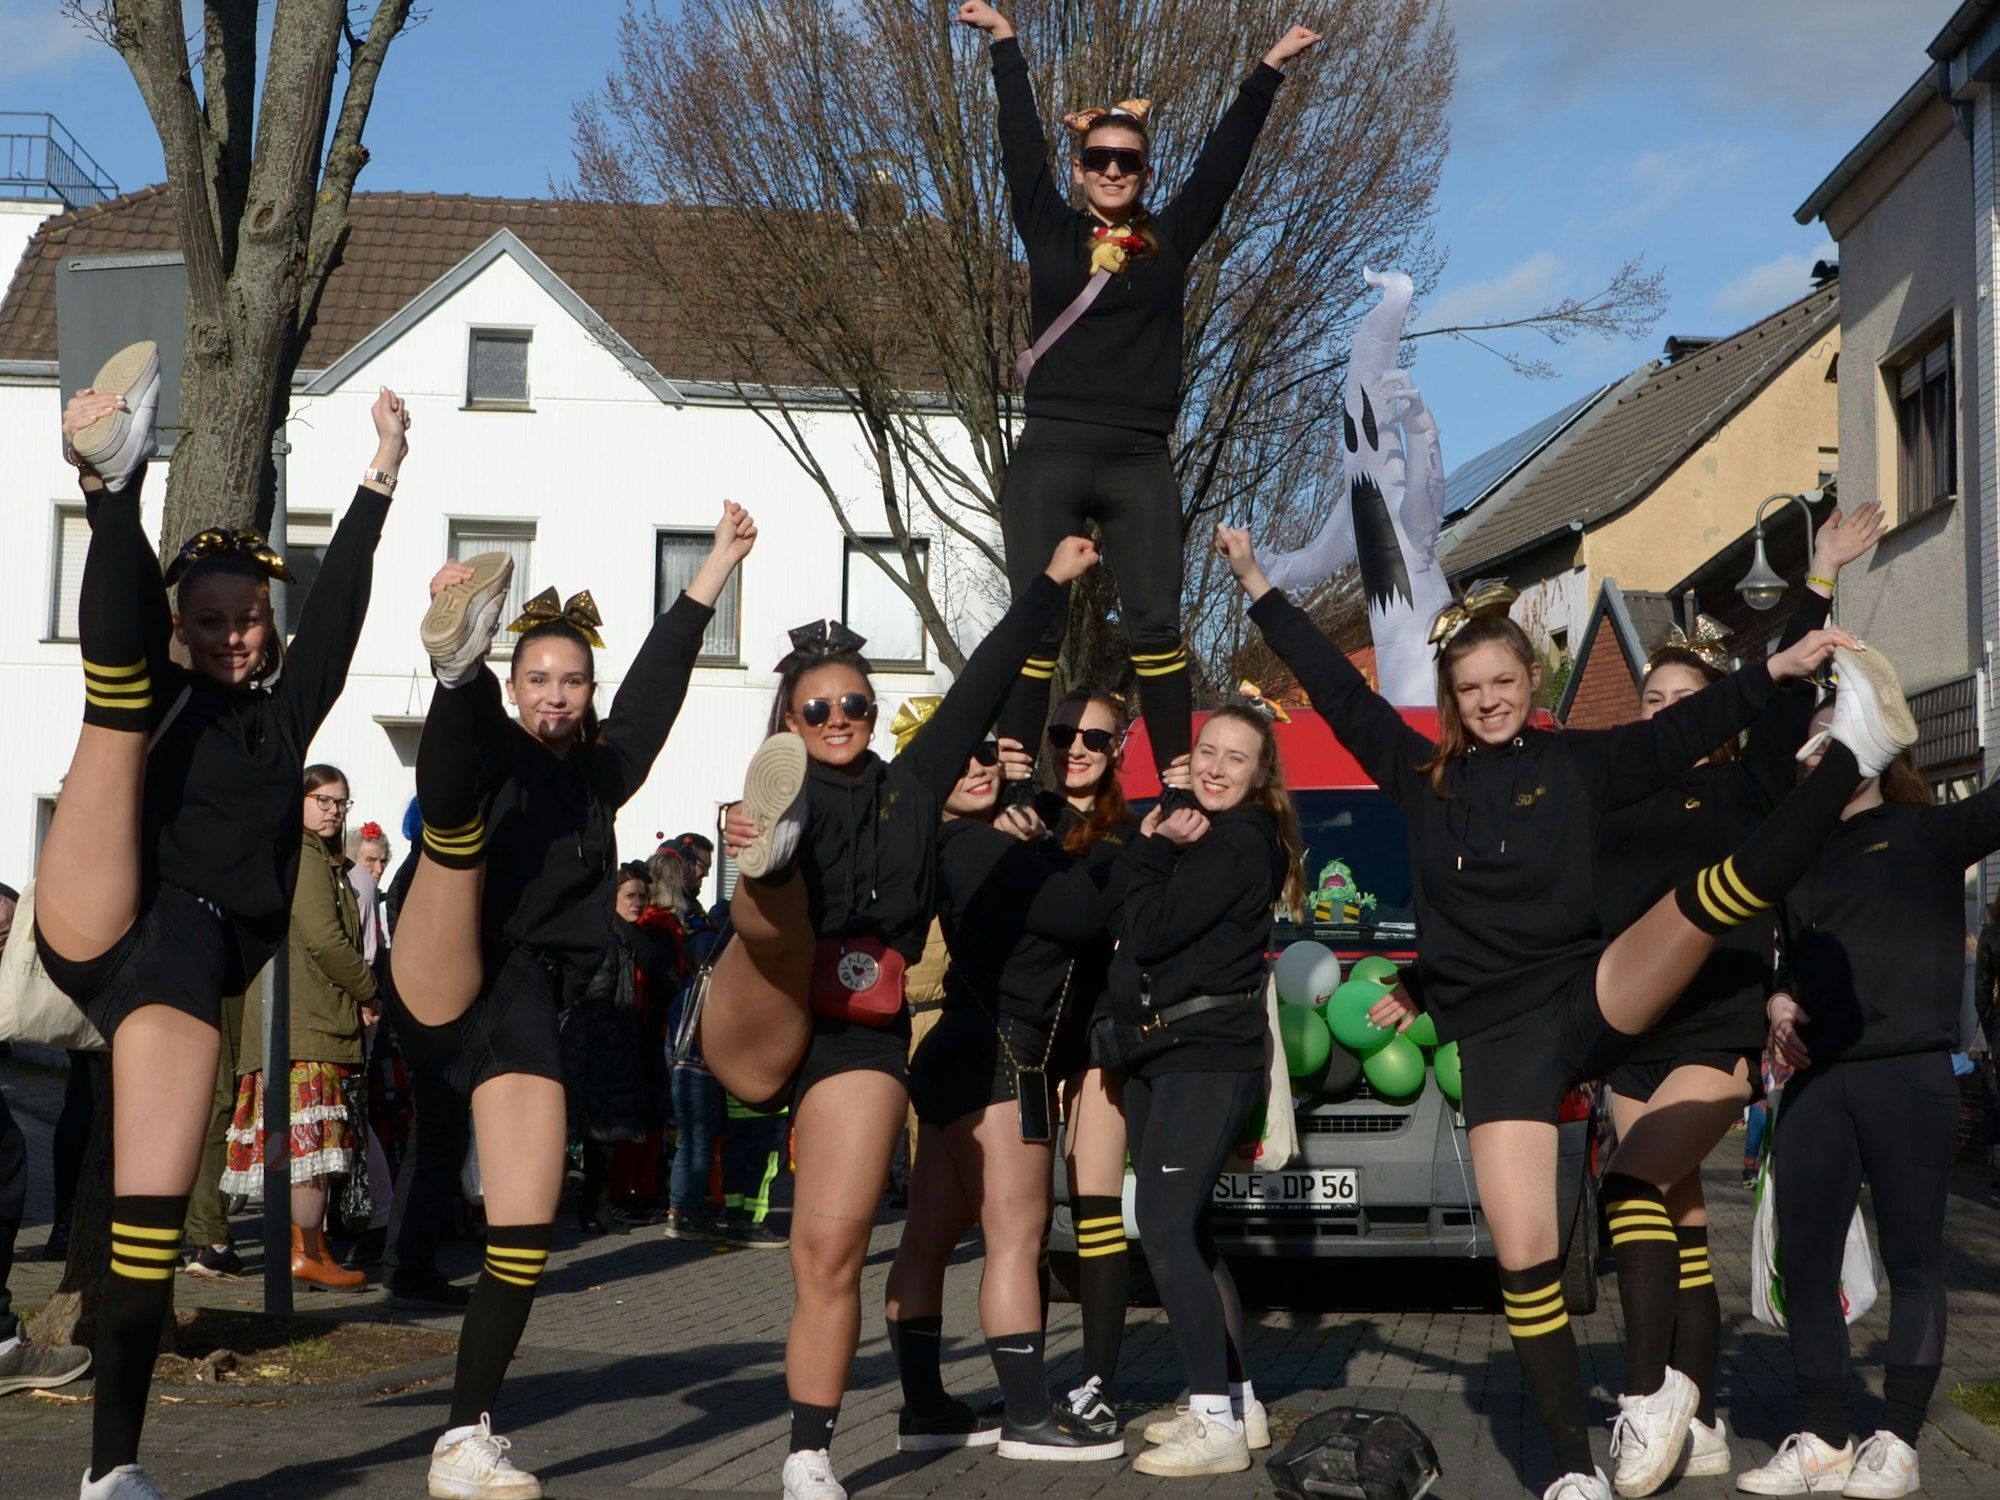 Die Cheerleader-Gruppe Dancing Lions erhielt im Rosenmontagszug in Stotzheim Applaus für ihre akrobatischen Vorführungen.